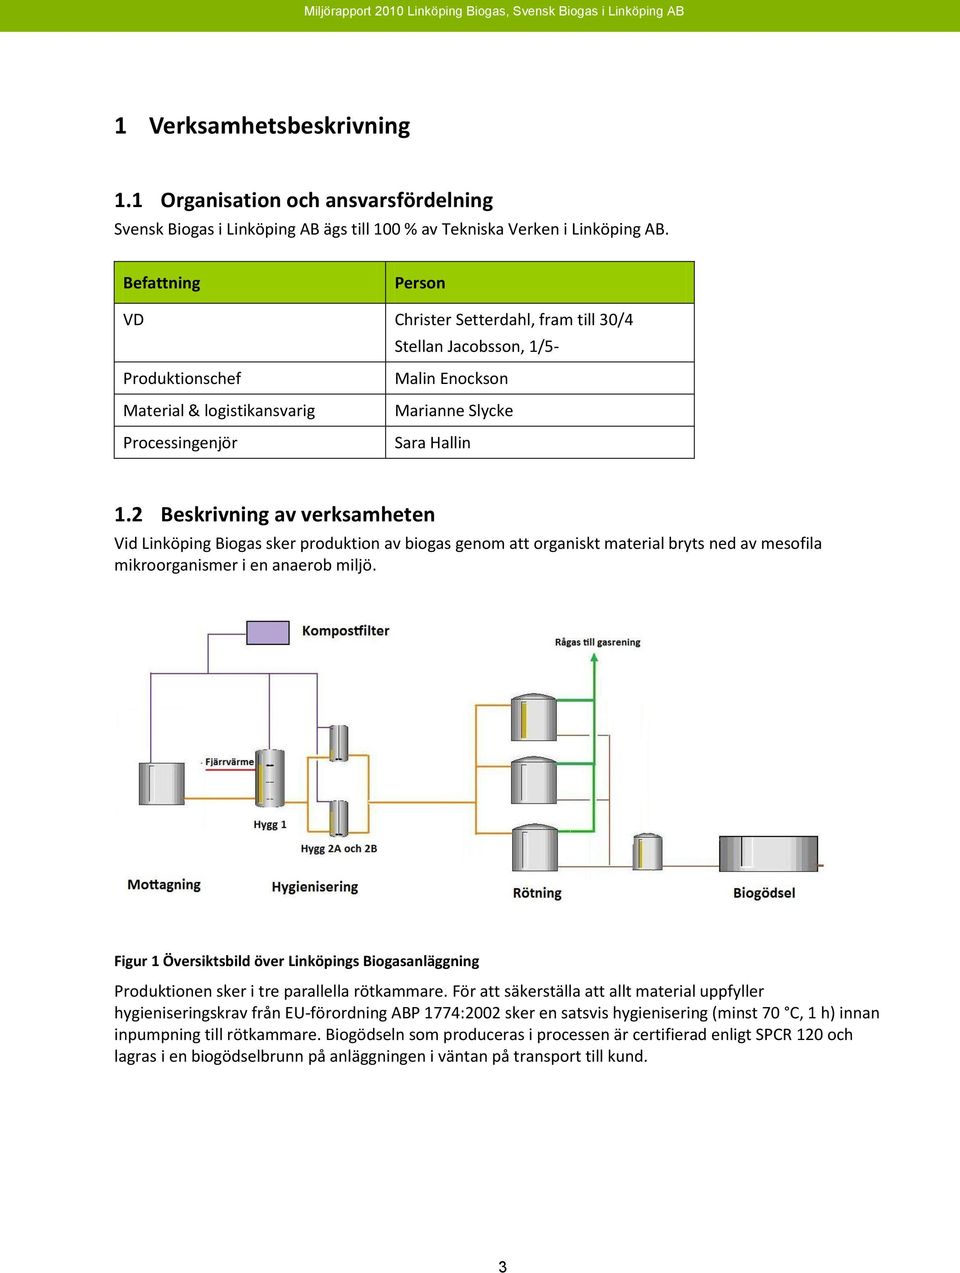 2 Beskrivning av verksamheten Vid Linköping Biogas sker produktion av biogas genom att organiskt material bryts ned av mesofila mikroorganismer i en anaerob miljö.